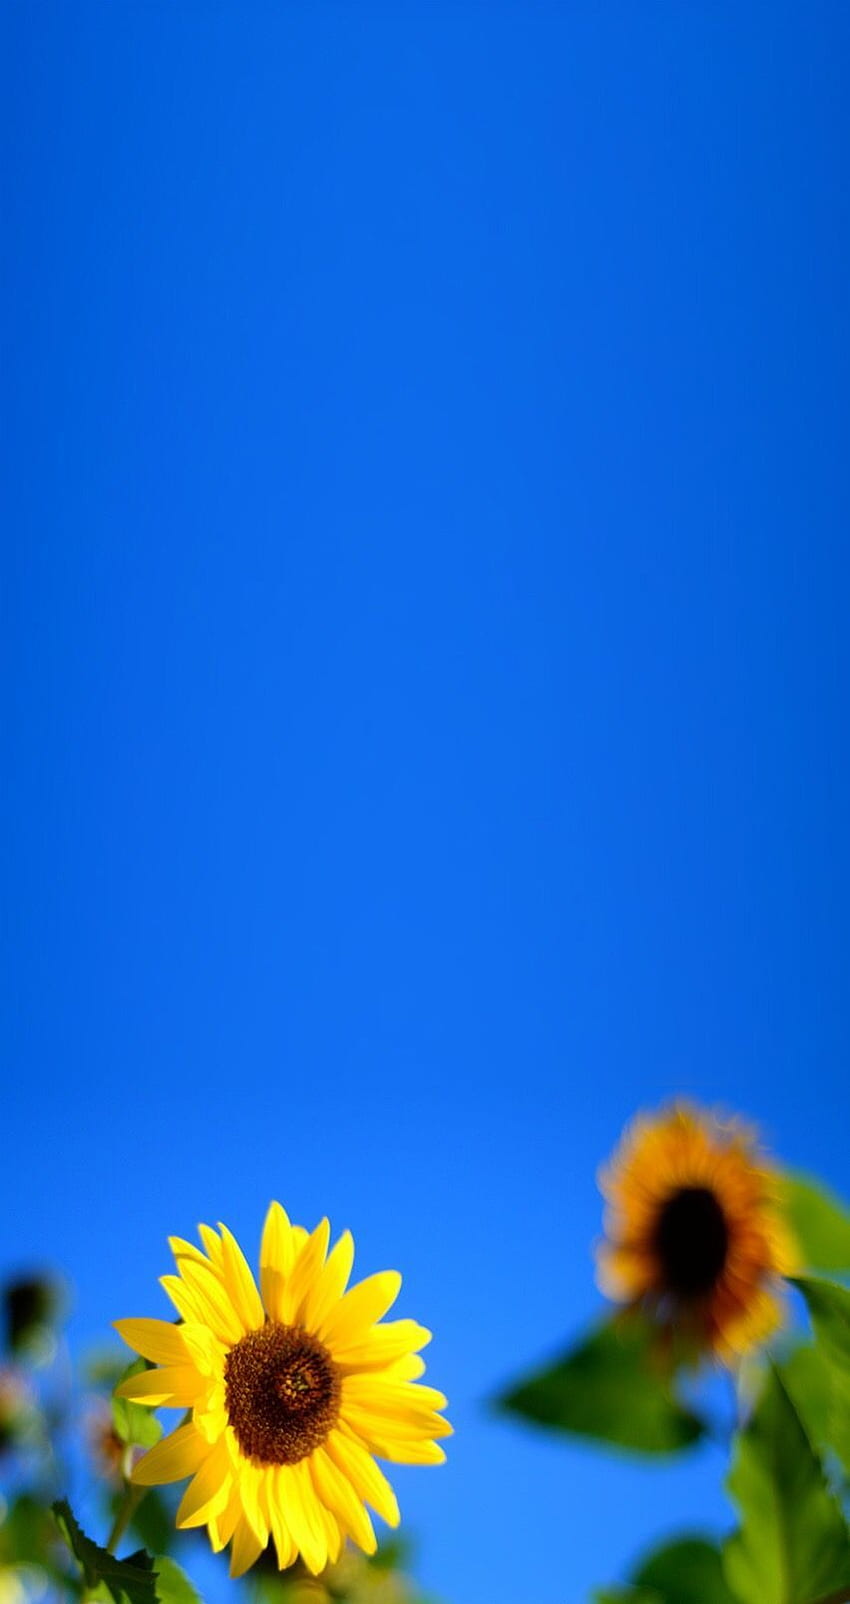 Wildrichkids. Latar belakang, grafi abstract, alam, Sunflower Blue HD-Handy-Hintergrundbild